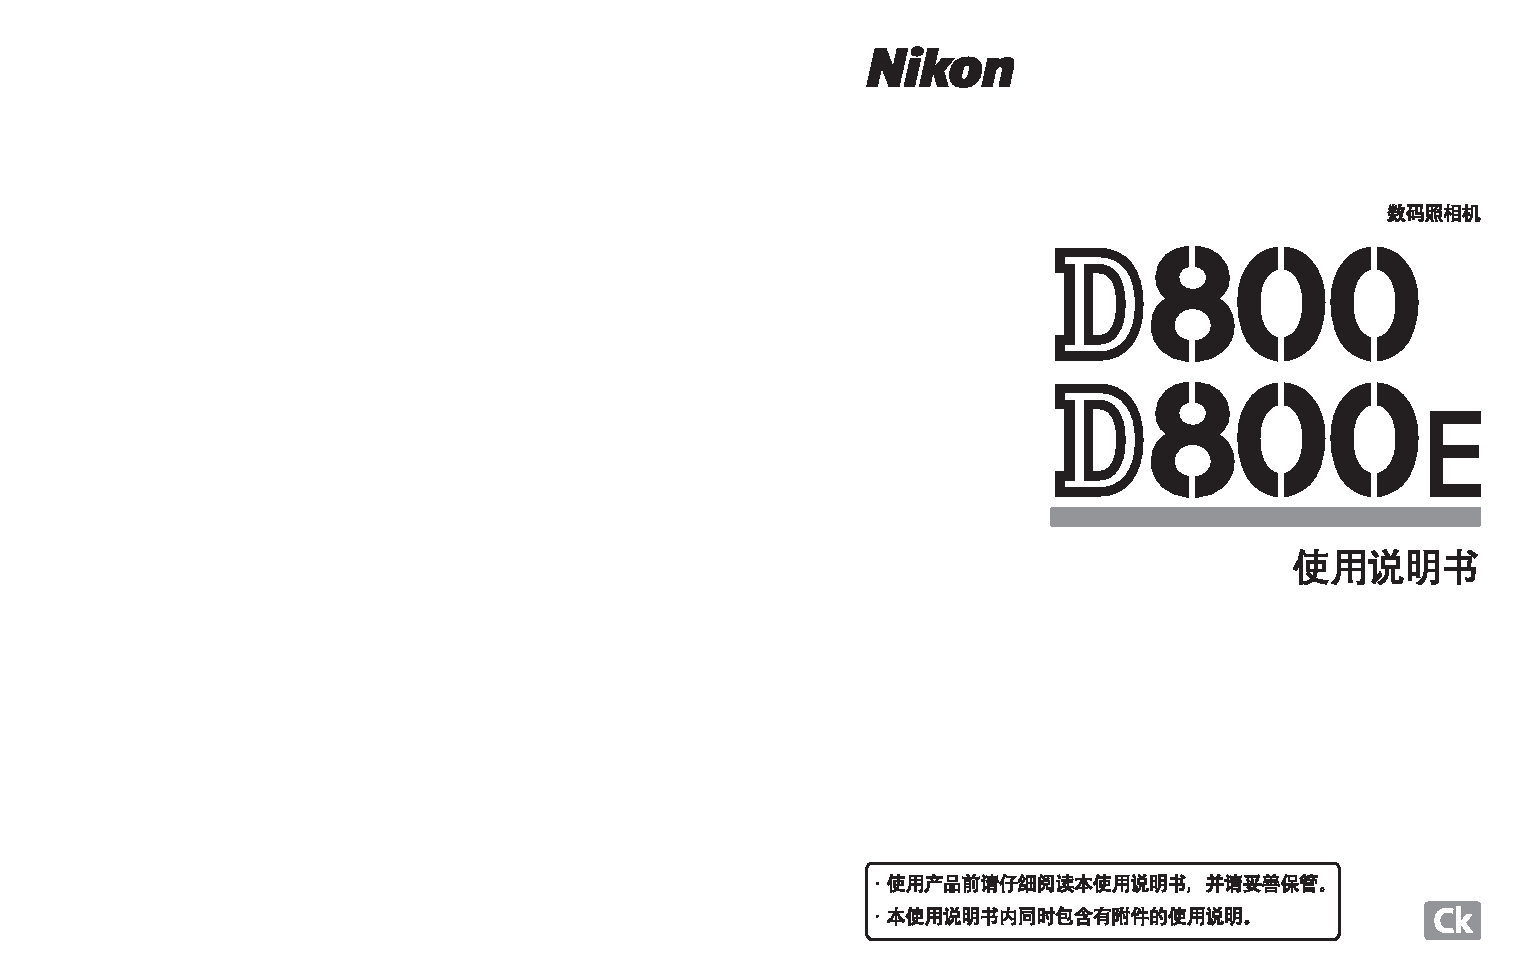 尼康 Nikon D800 大陆版 使用说明书 封面